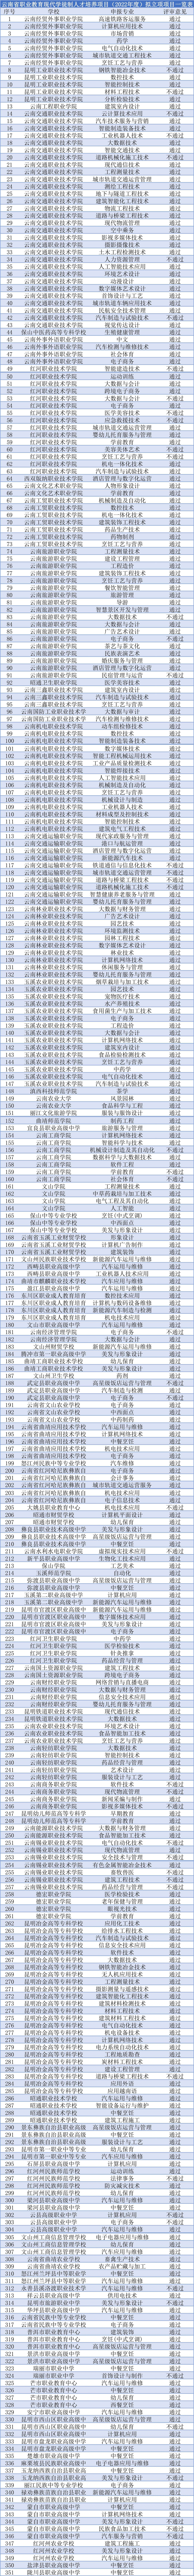 云南省职业教育现代学徒制人才培养项目（2022年度）拟立项项目一览表.jpg